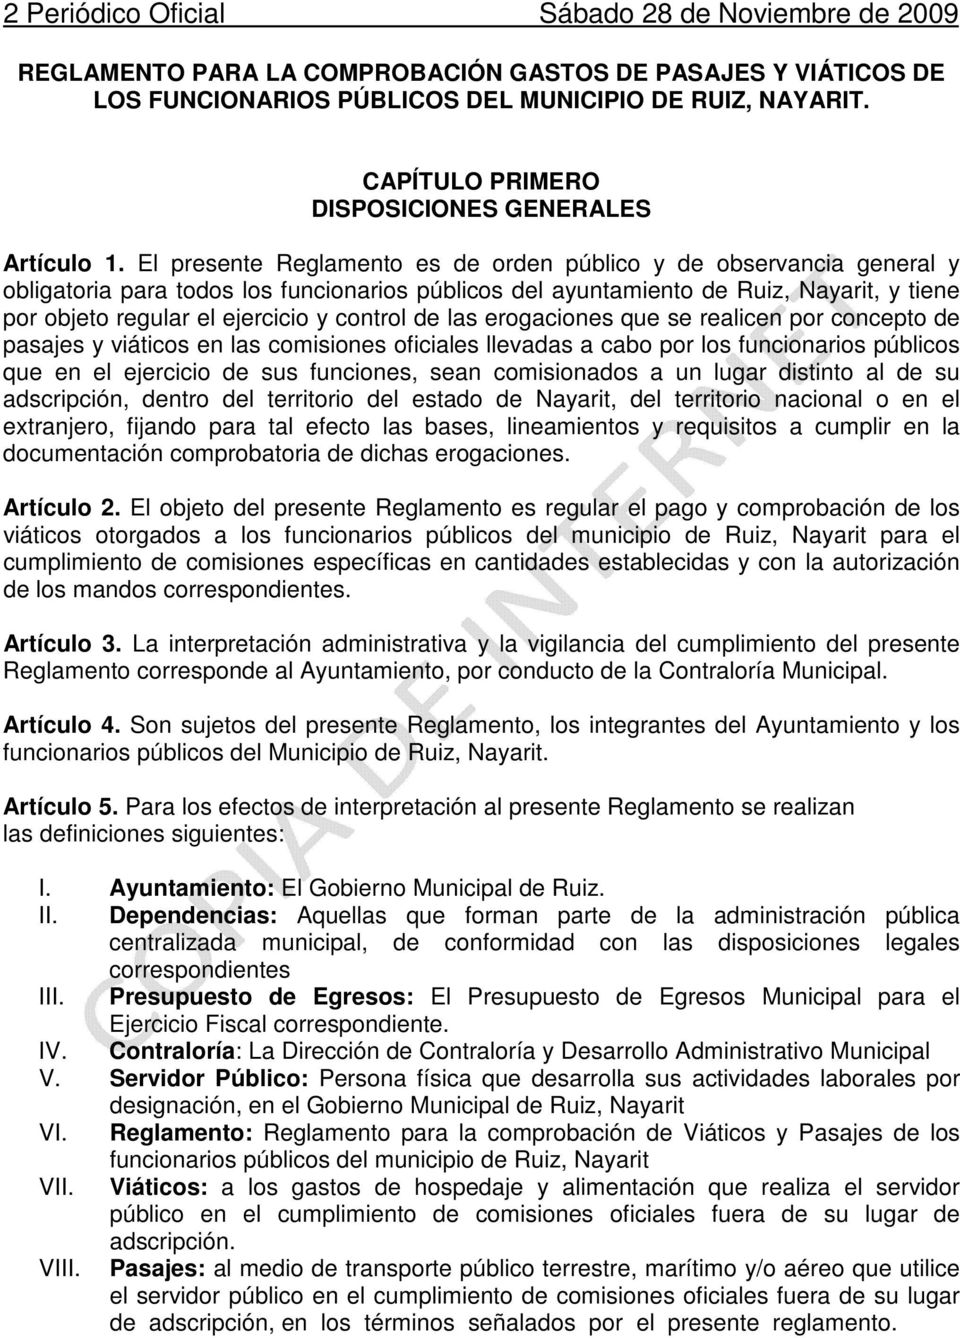 El presente Reglamento es de orden público y de observancia general y obligatoria para todos los funcionarios públicos del ayuntamiento de Ruiz, Nayarit, y tiene por objeto regular el ejercicio y